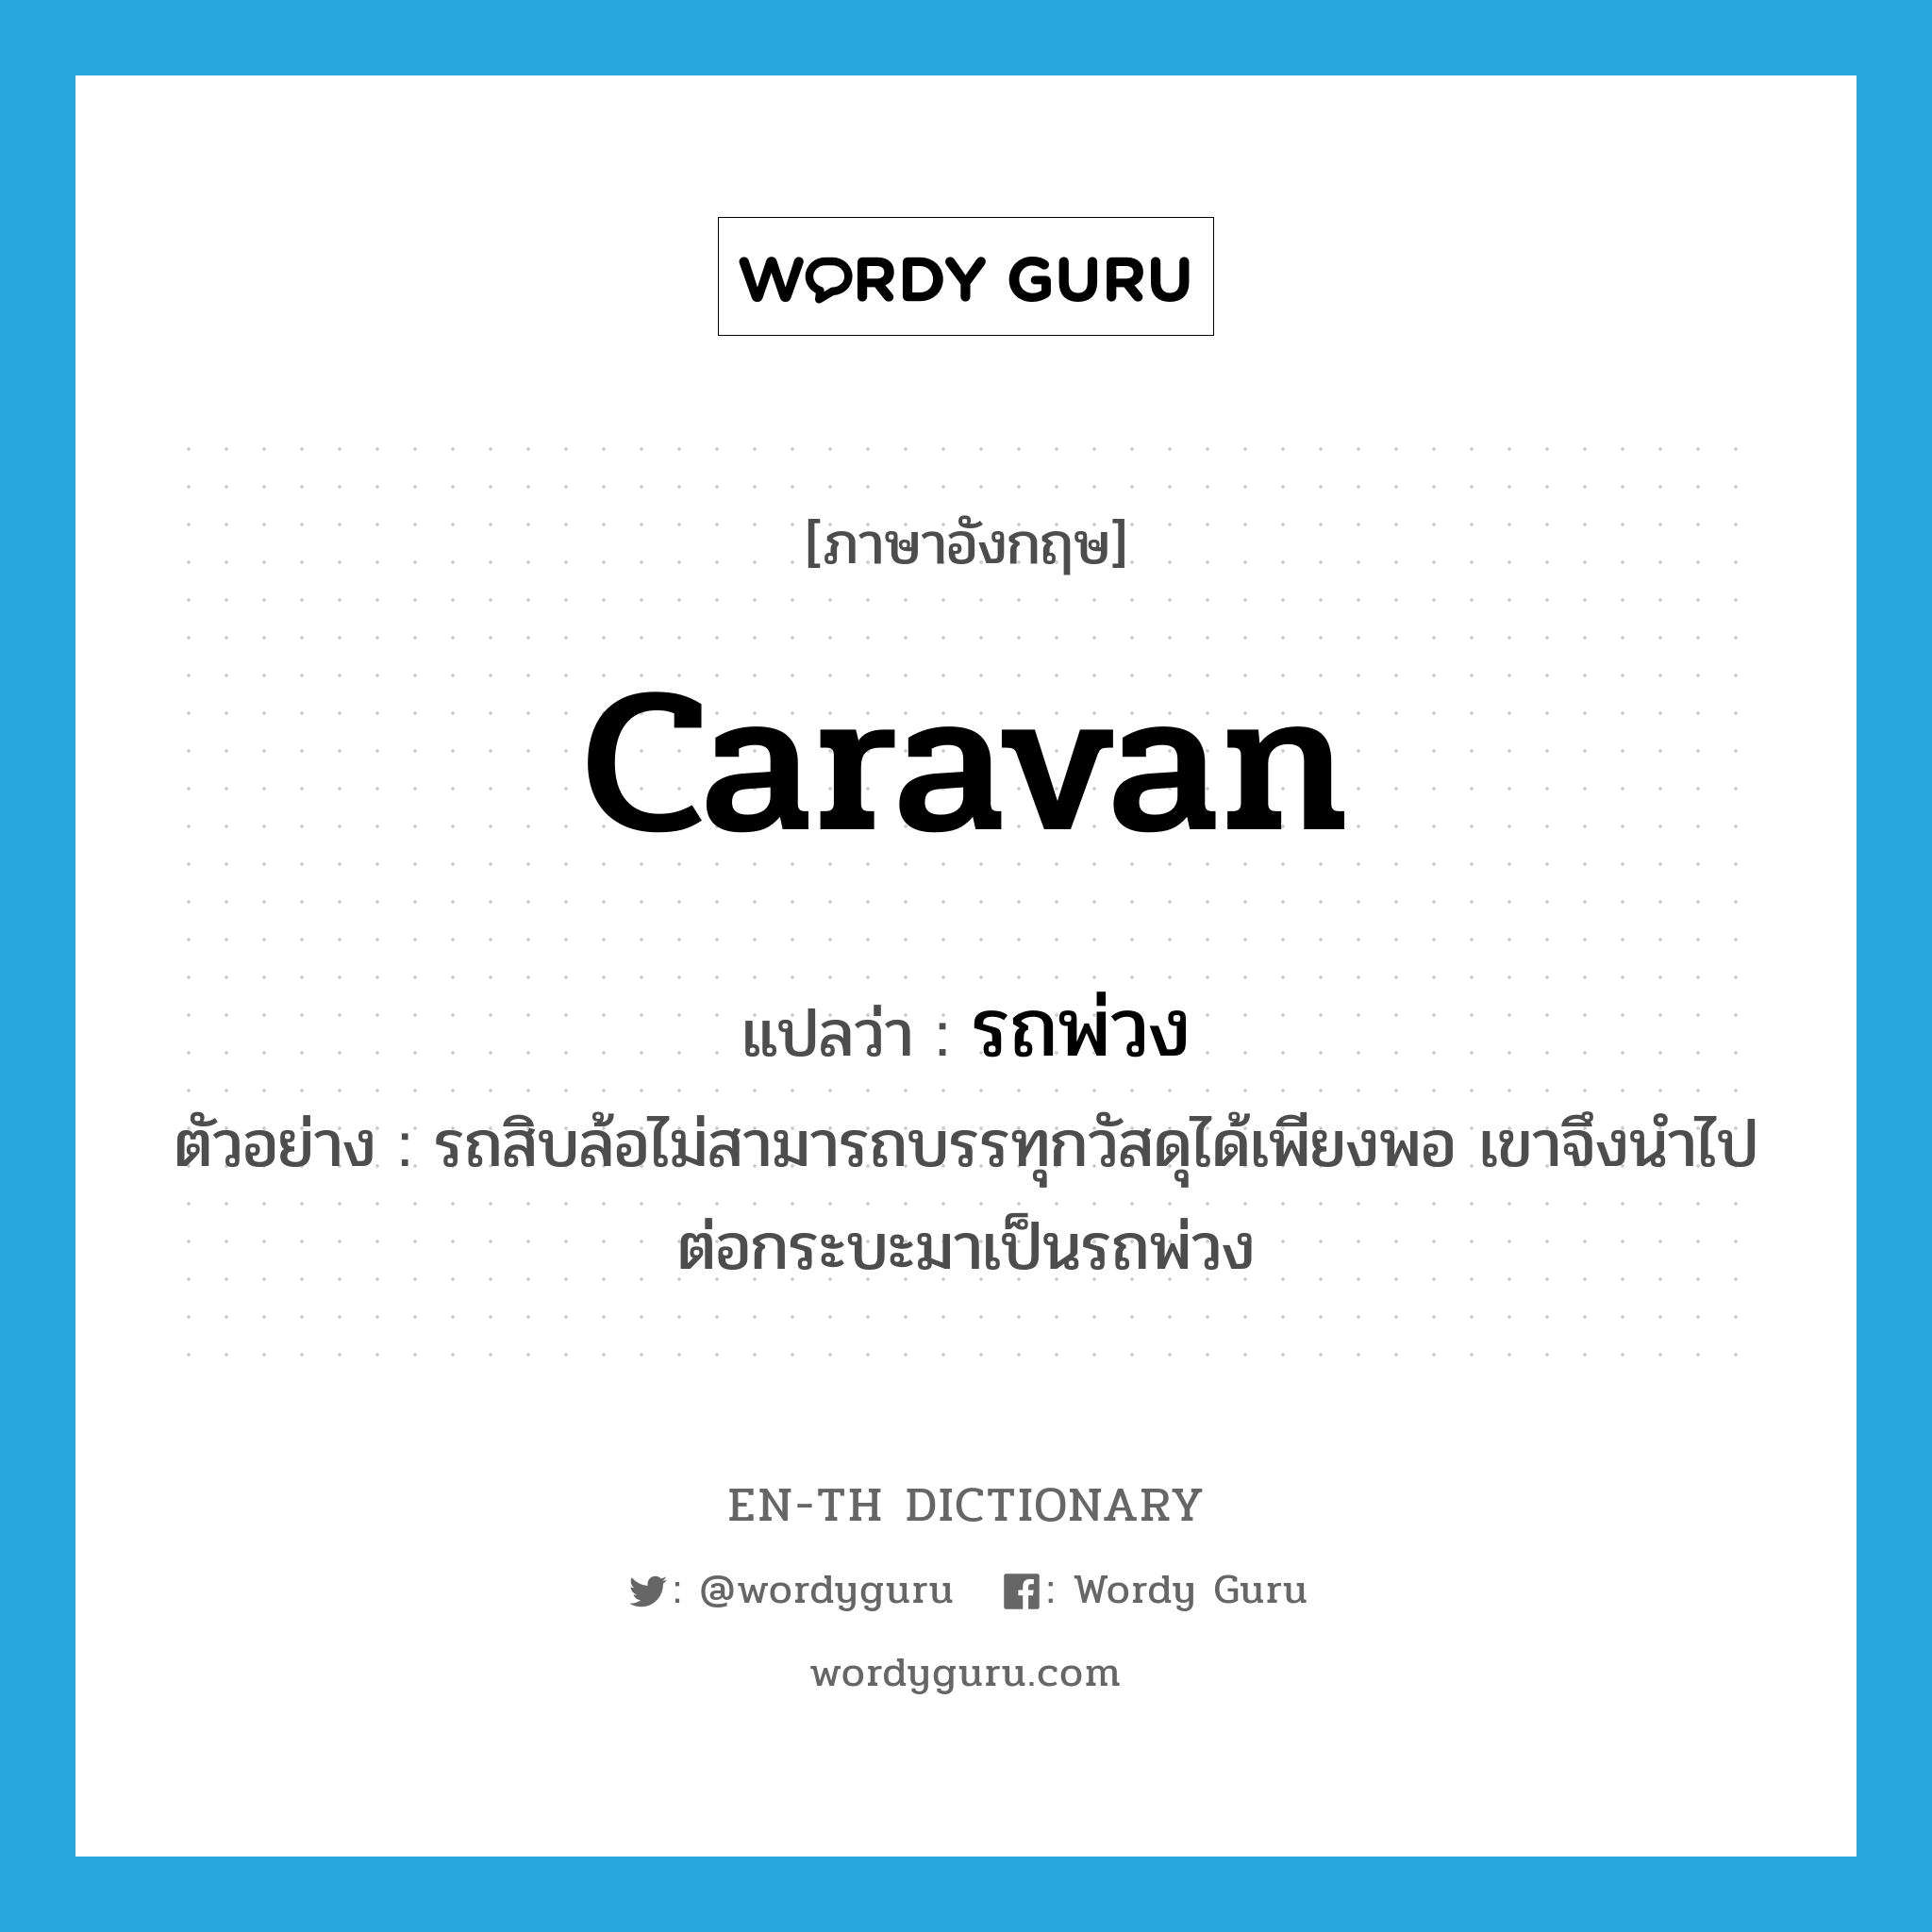 caravan แปลว่า?, คำศัพท์ภาษาอังกฤษ caravan แปลว่า รถพ่วง ประเภท N ตัวอย่าง รถสิบล้อไม่สามารถบรรทุกวัสดุได้เพียงพอ เขาจึงนำไปต่อกระบะมาเป็นรถพ่วง หมวด N